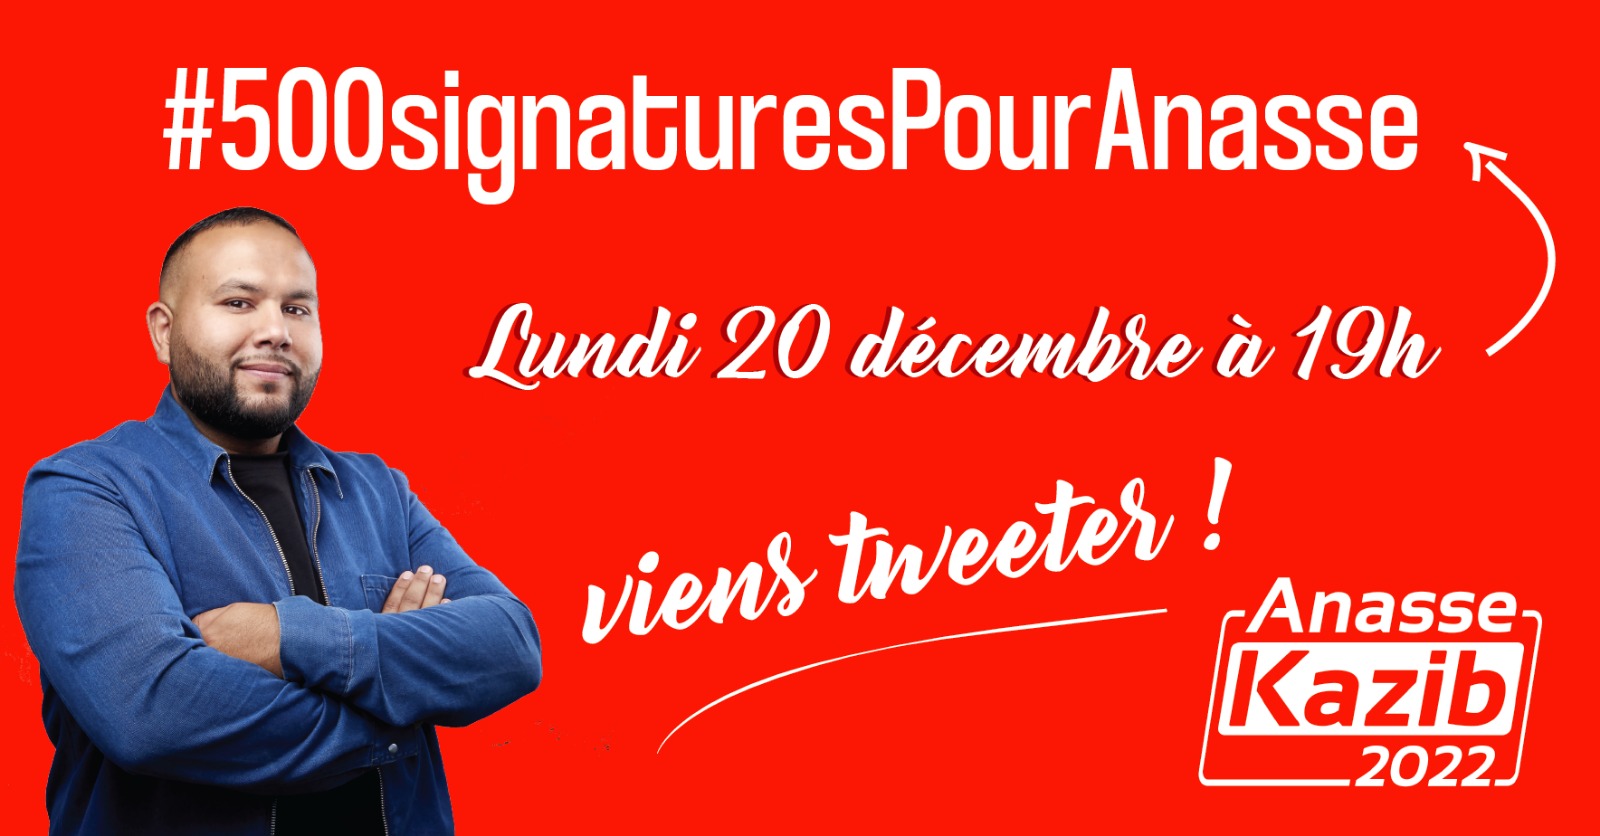 #500SignaturesPourAnasse. Lundi 19h, twittez pour appeler aux dons pour la campagne !